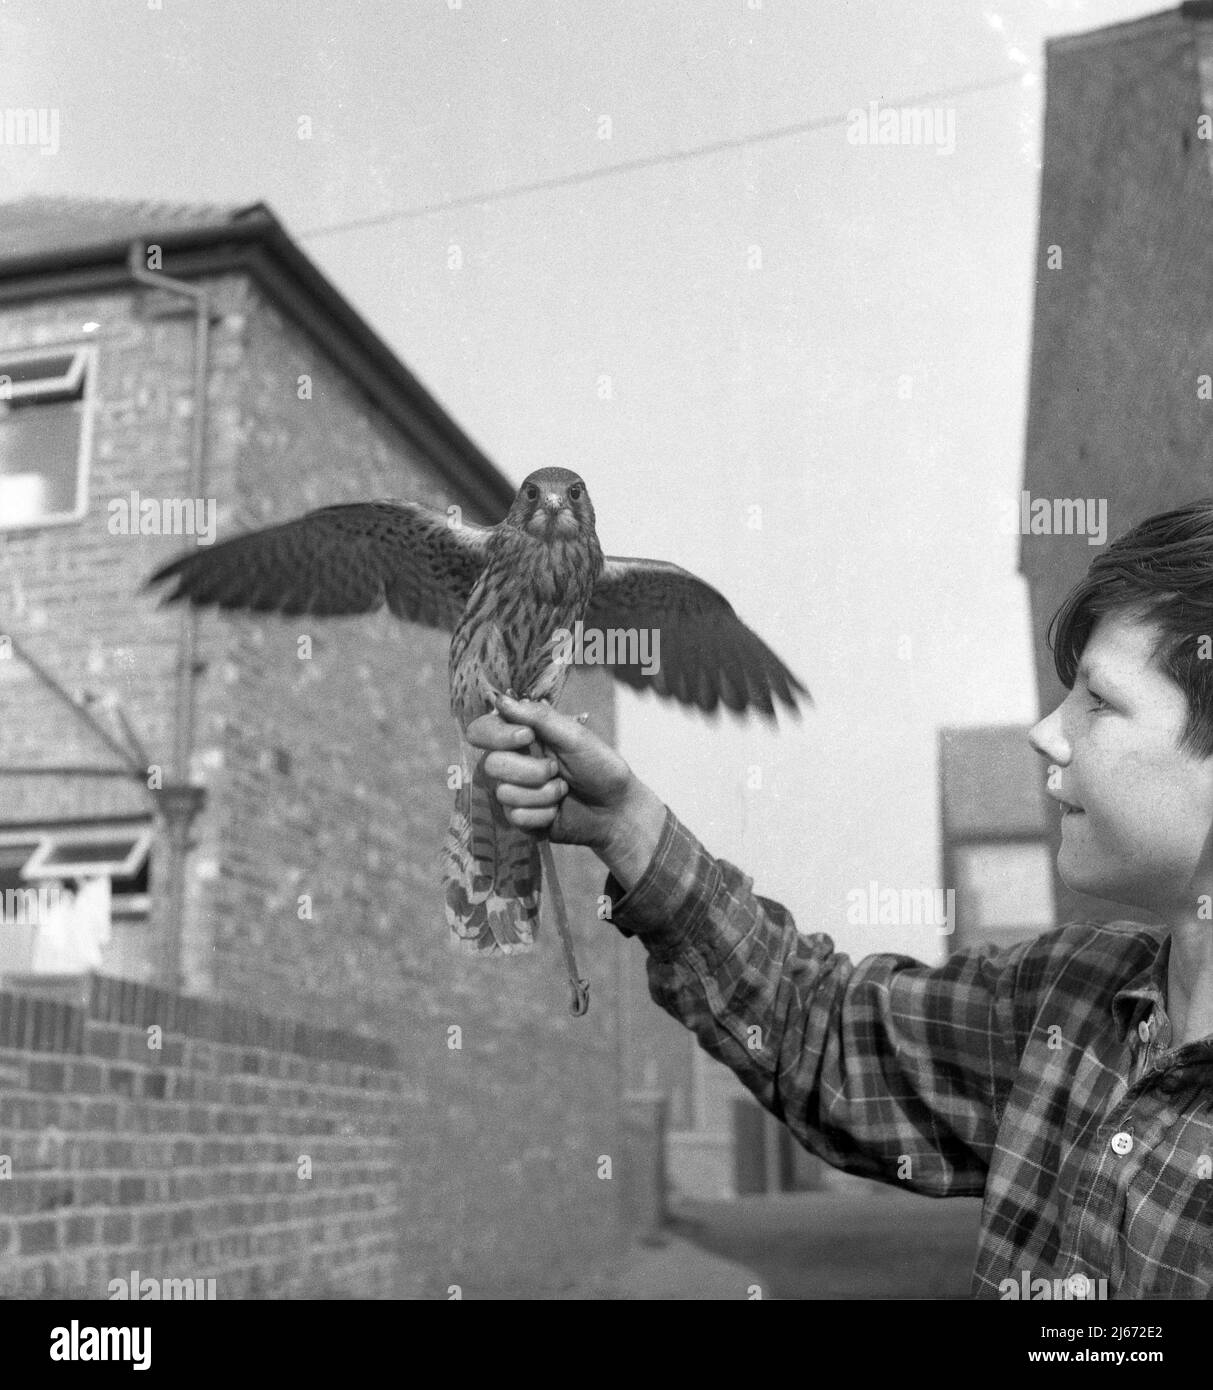 1960s, historisch, draußen in einer Seitengasse, ein junger Teenager, der einen Greifvogel mit seinen Flügeln nach draußen hält, Stockport, Manchester, England, Großbritannien. Stockfoto